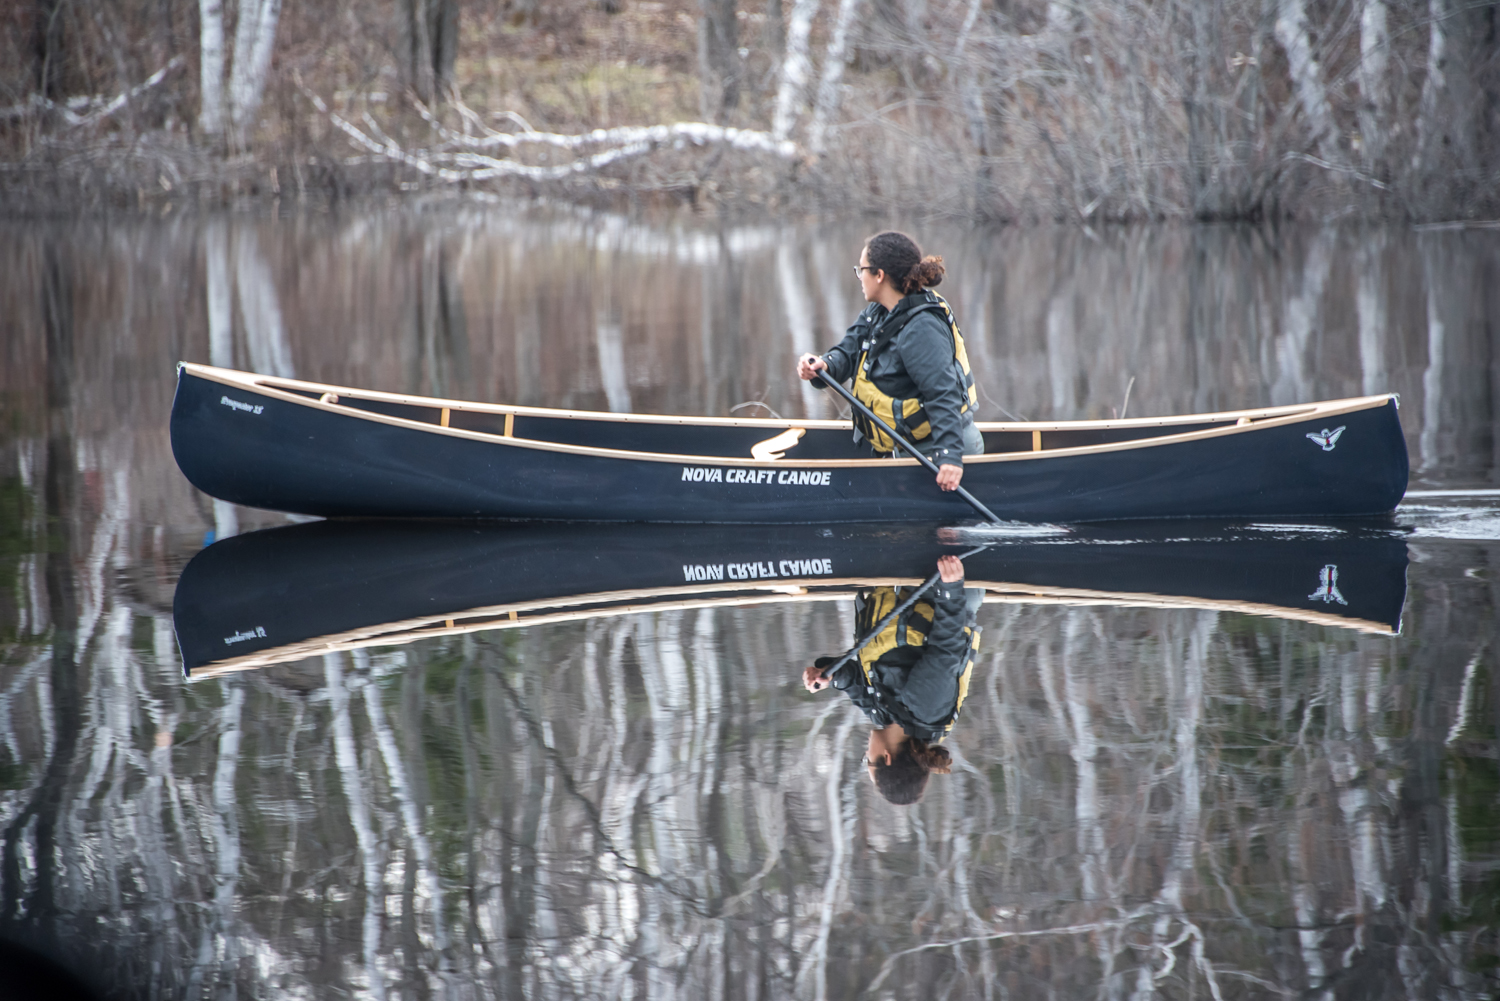 Prospector 15' Canoe, Extra Responsive